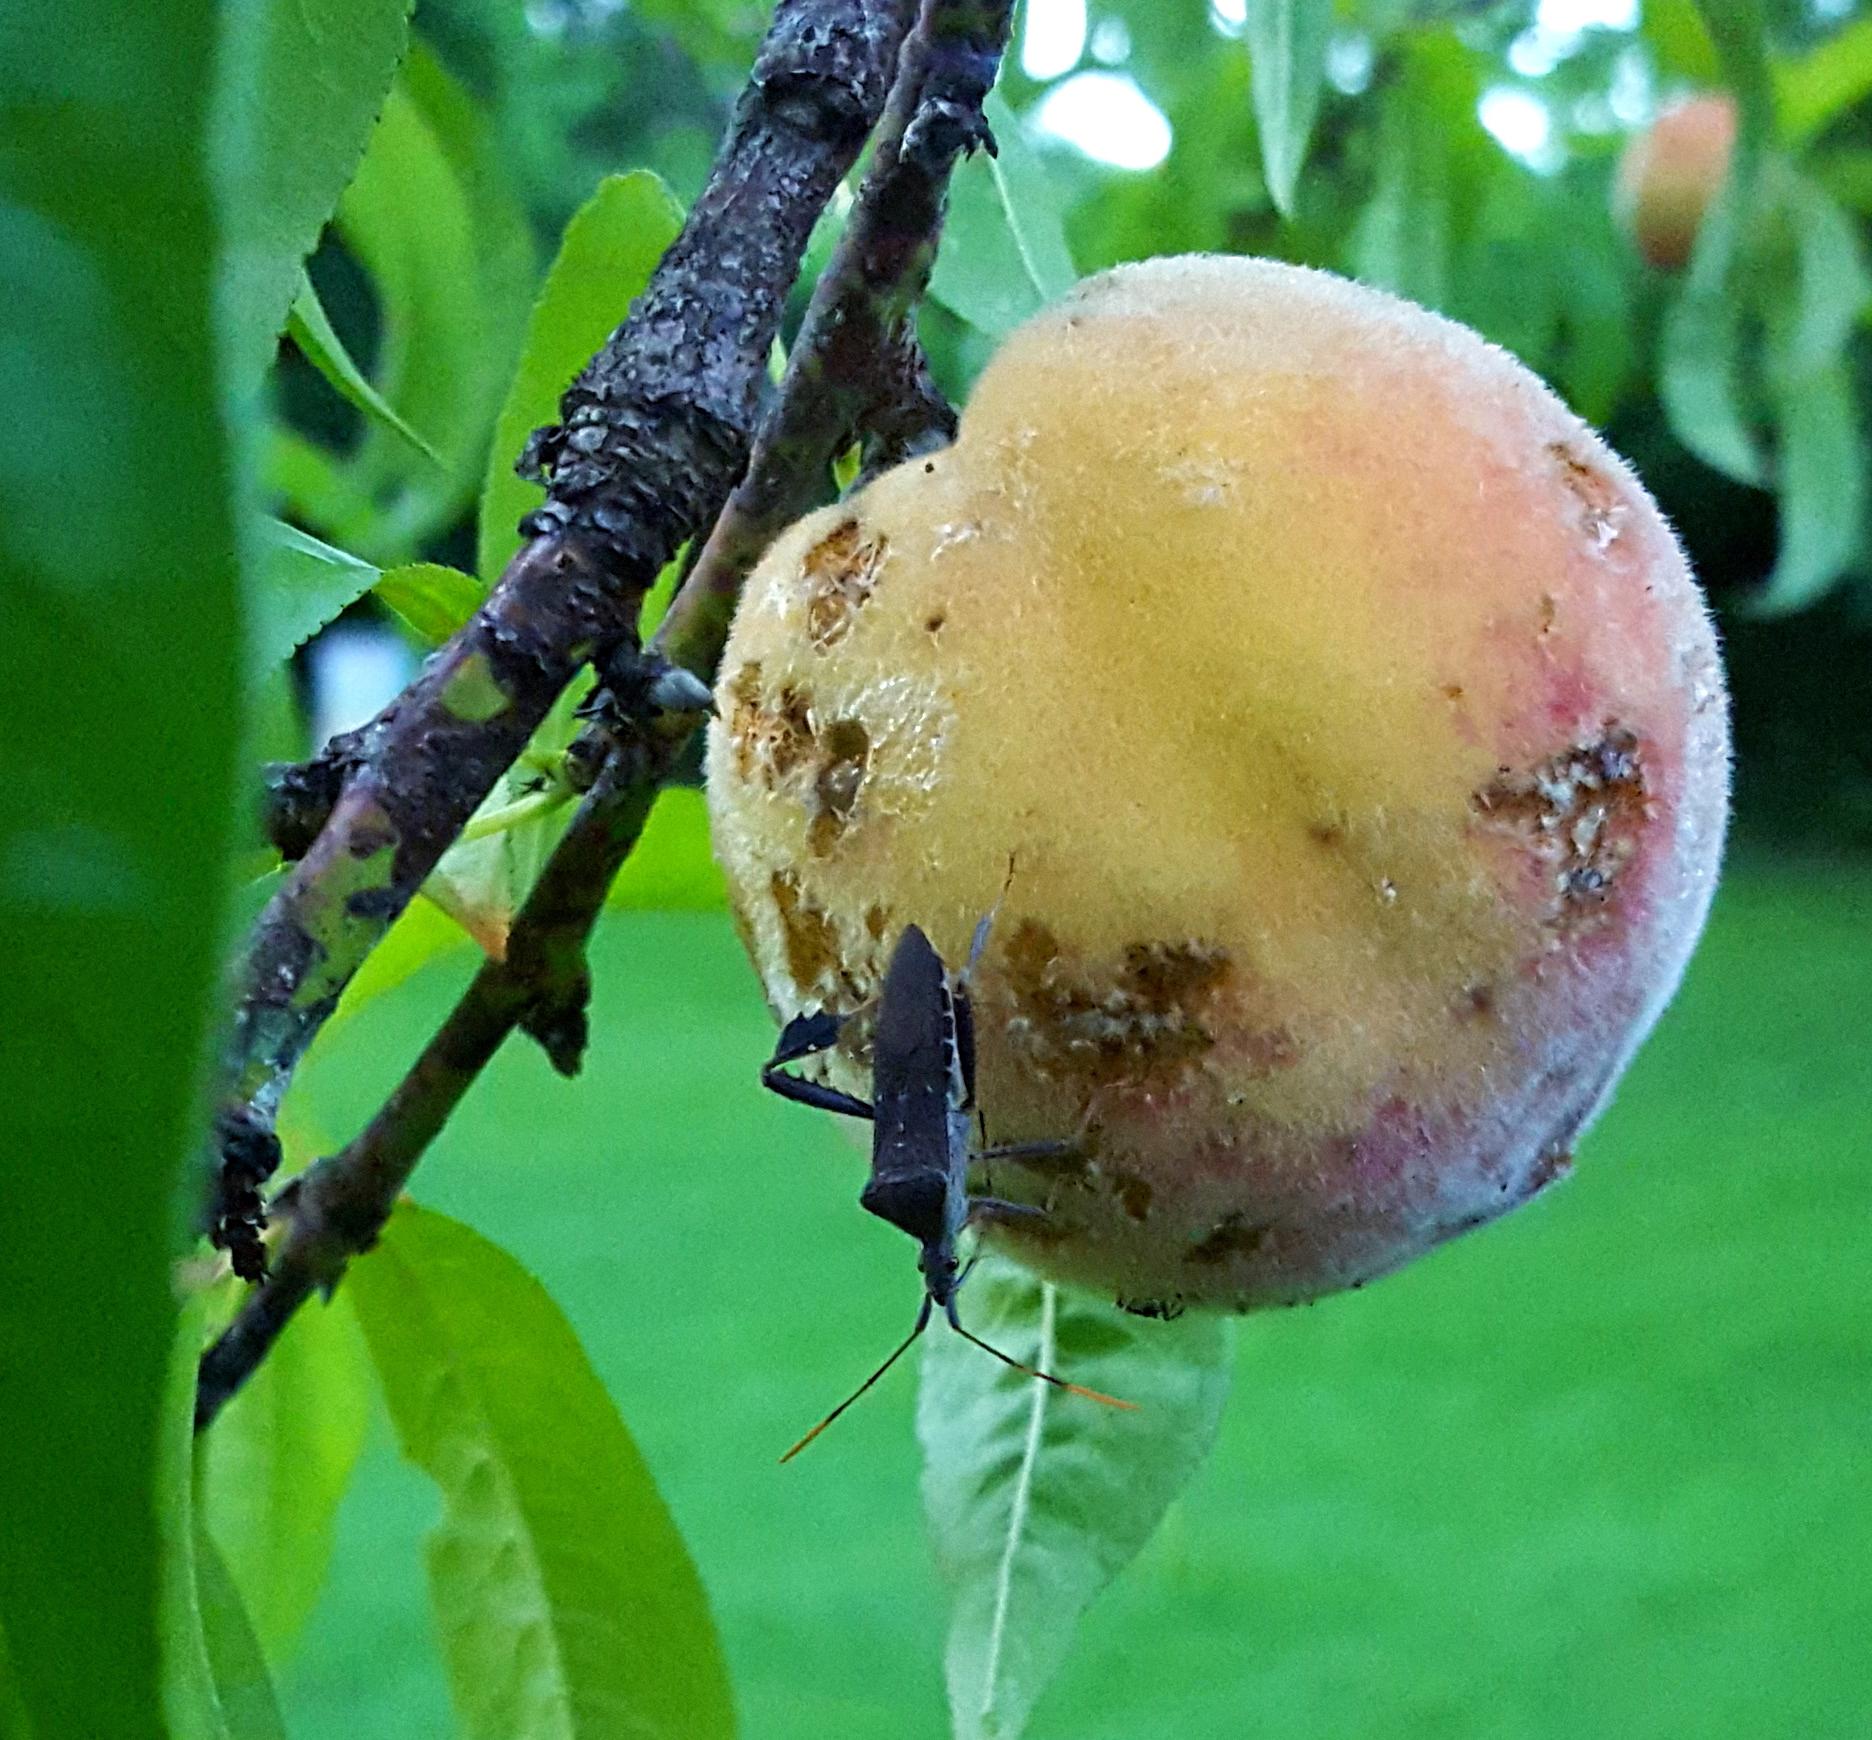 Leaf-footed bug feeding on peach. 